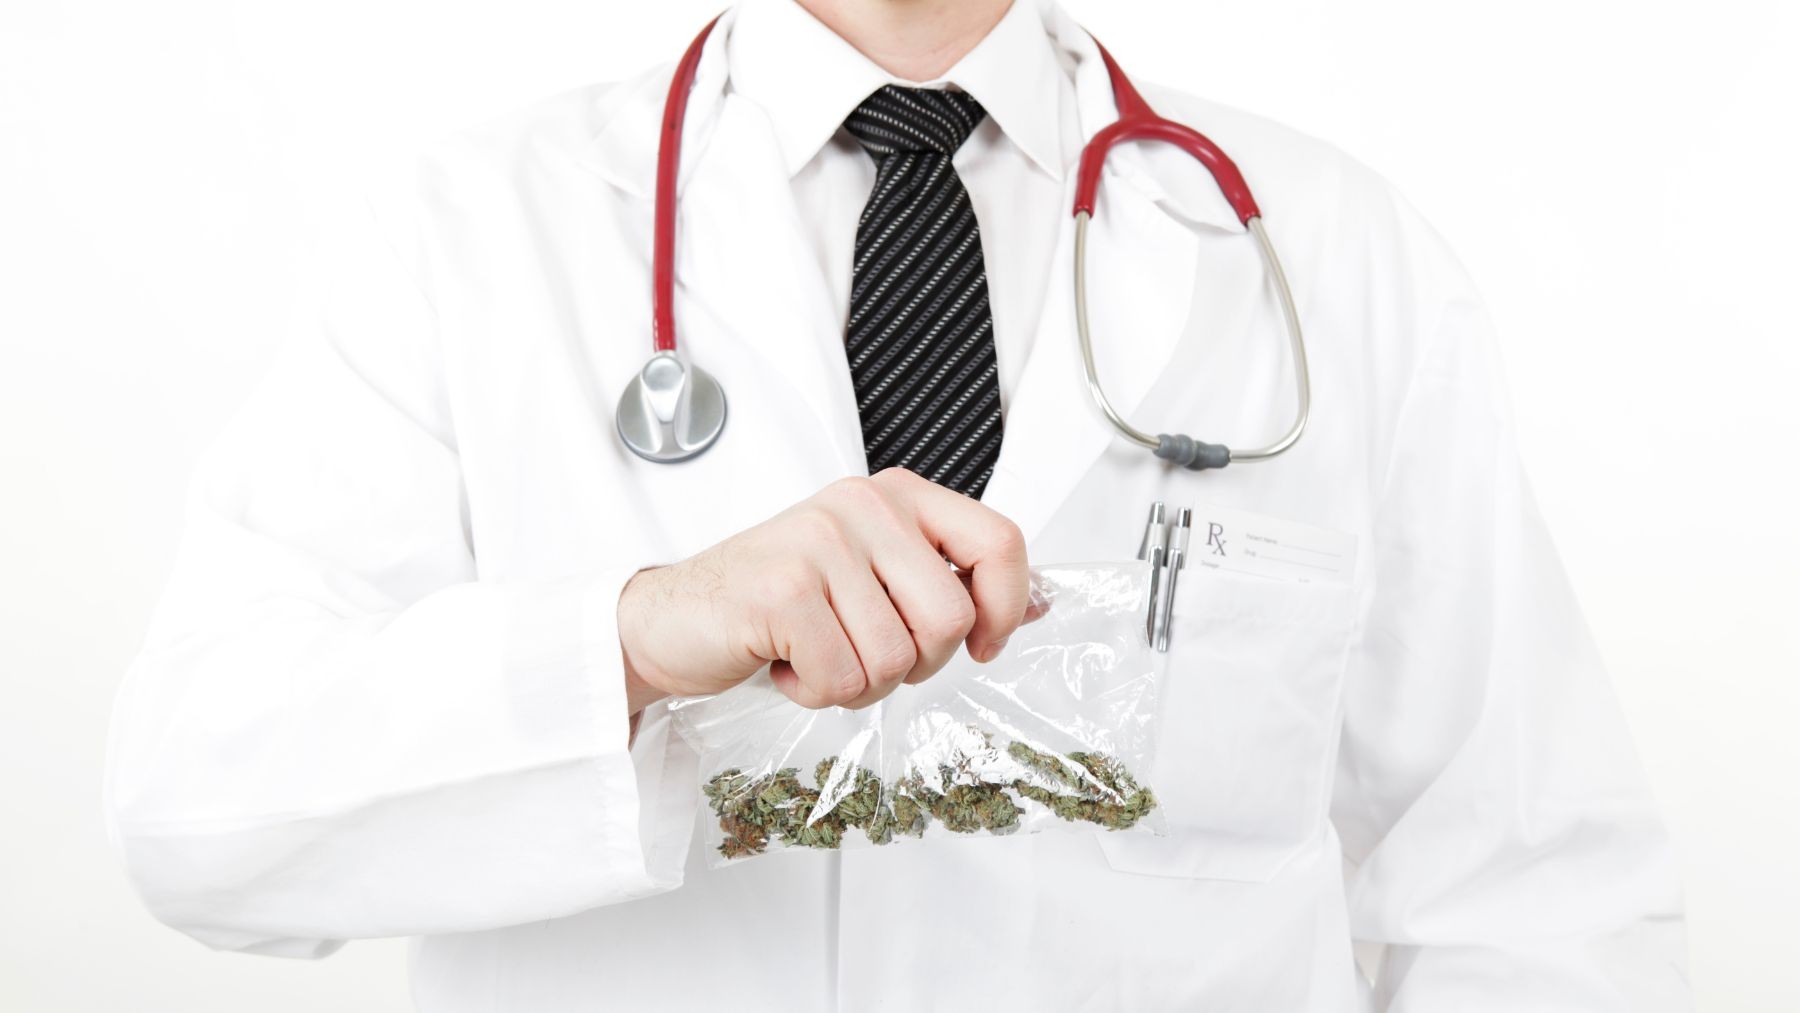 Medyczna marihuana to lek czy narkotyk?